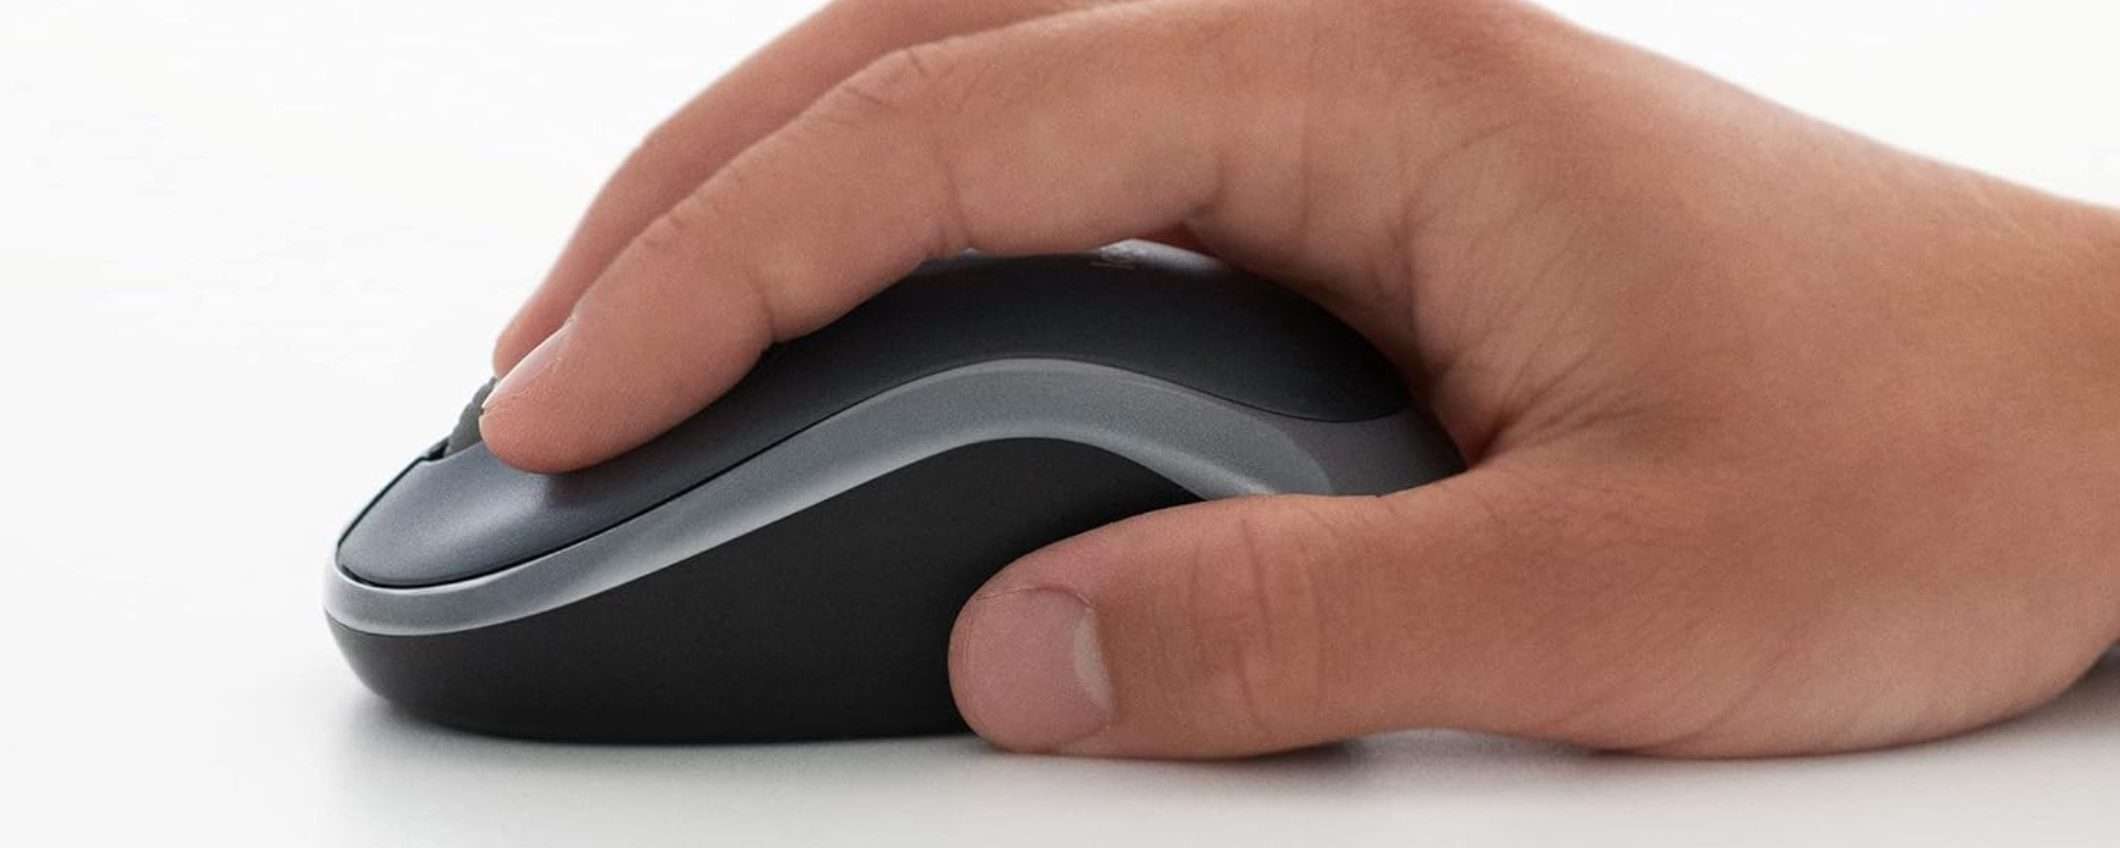 Mouse Logitech COMPATTO: 11,40€ su Amazon (SCONTO del 37%)